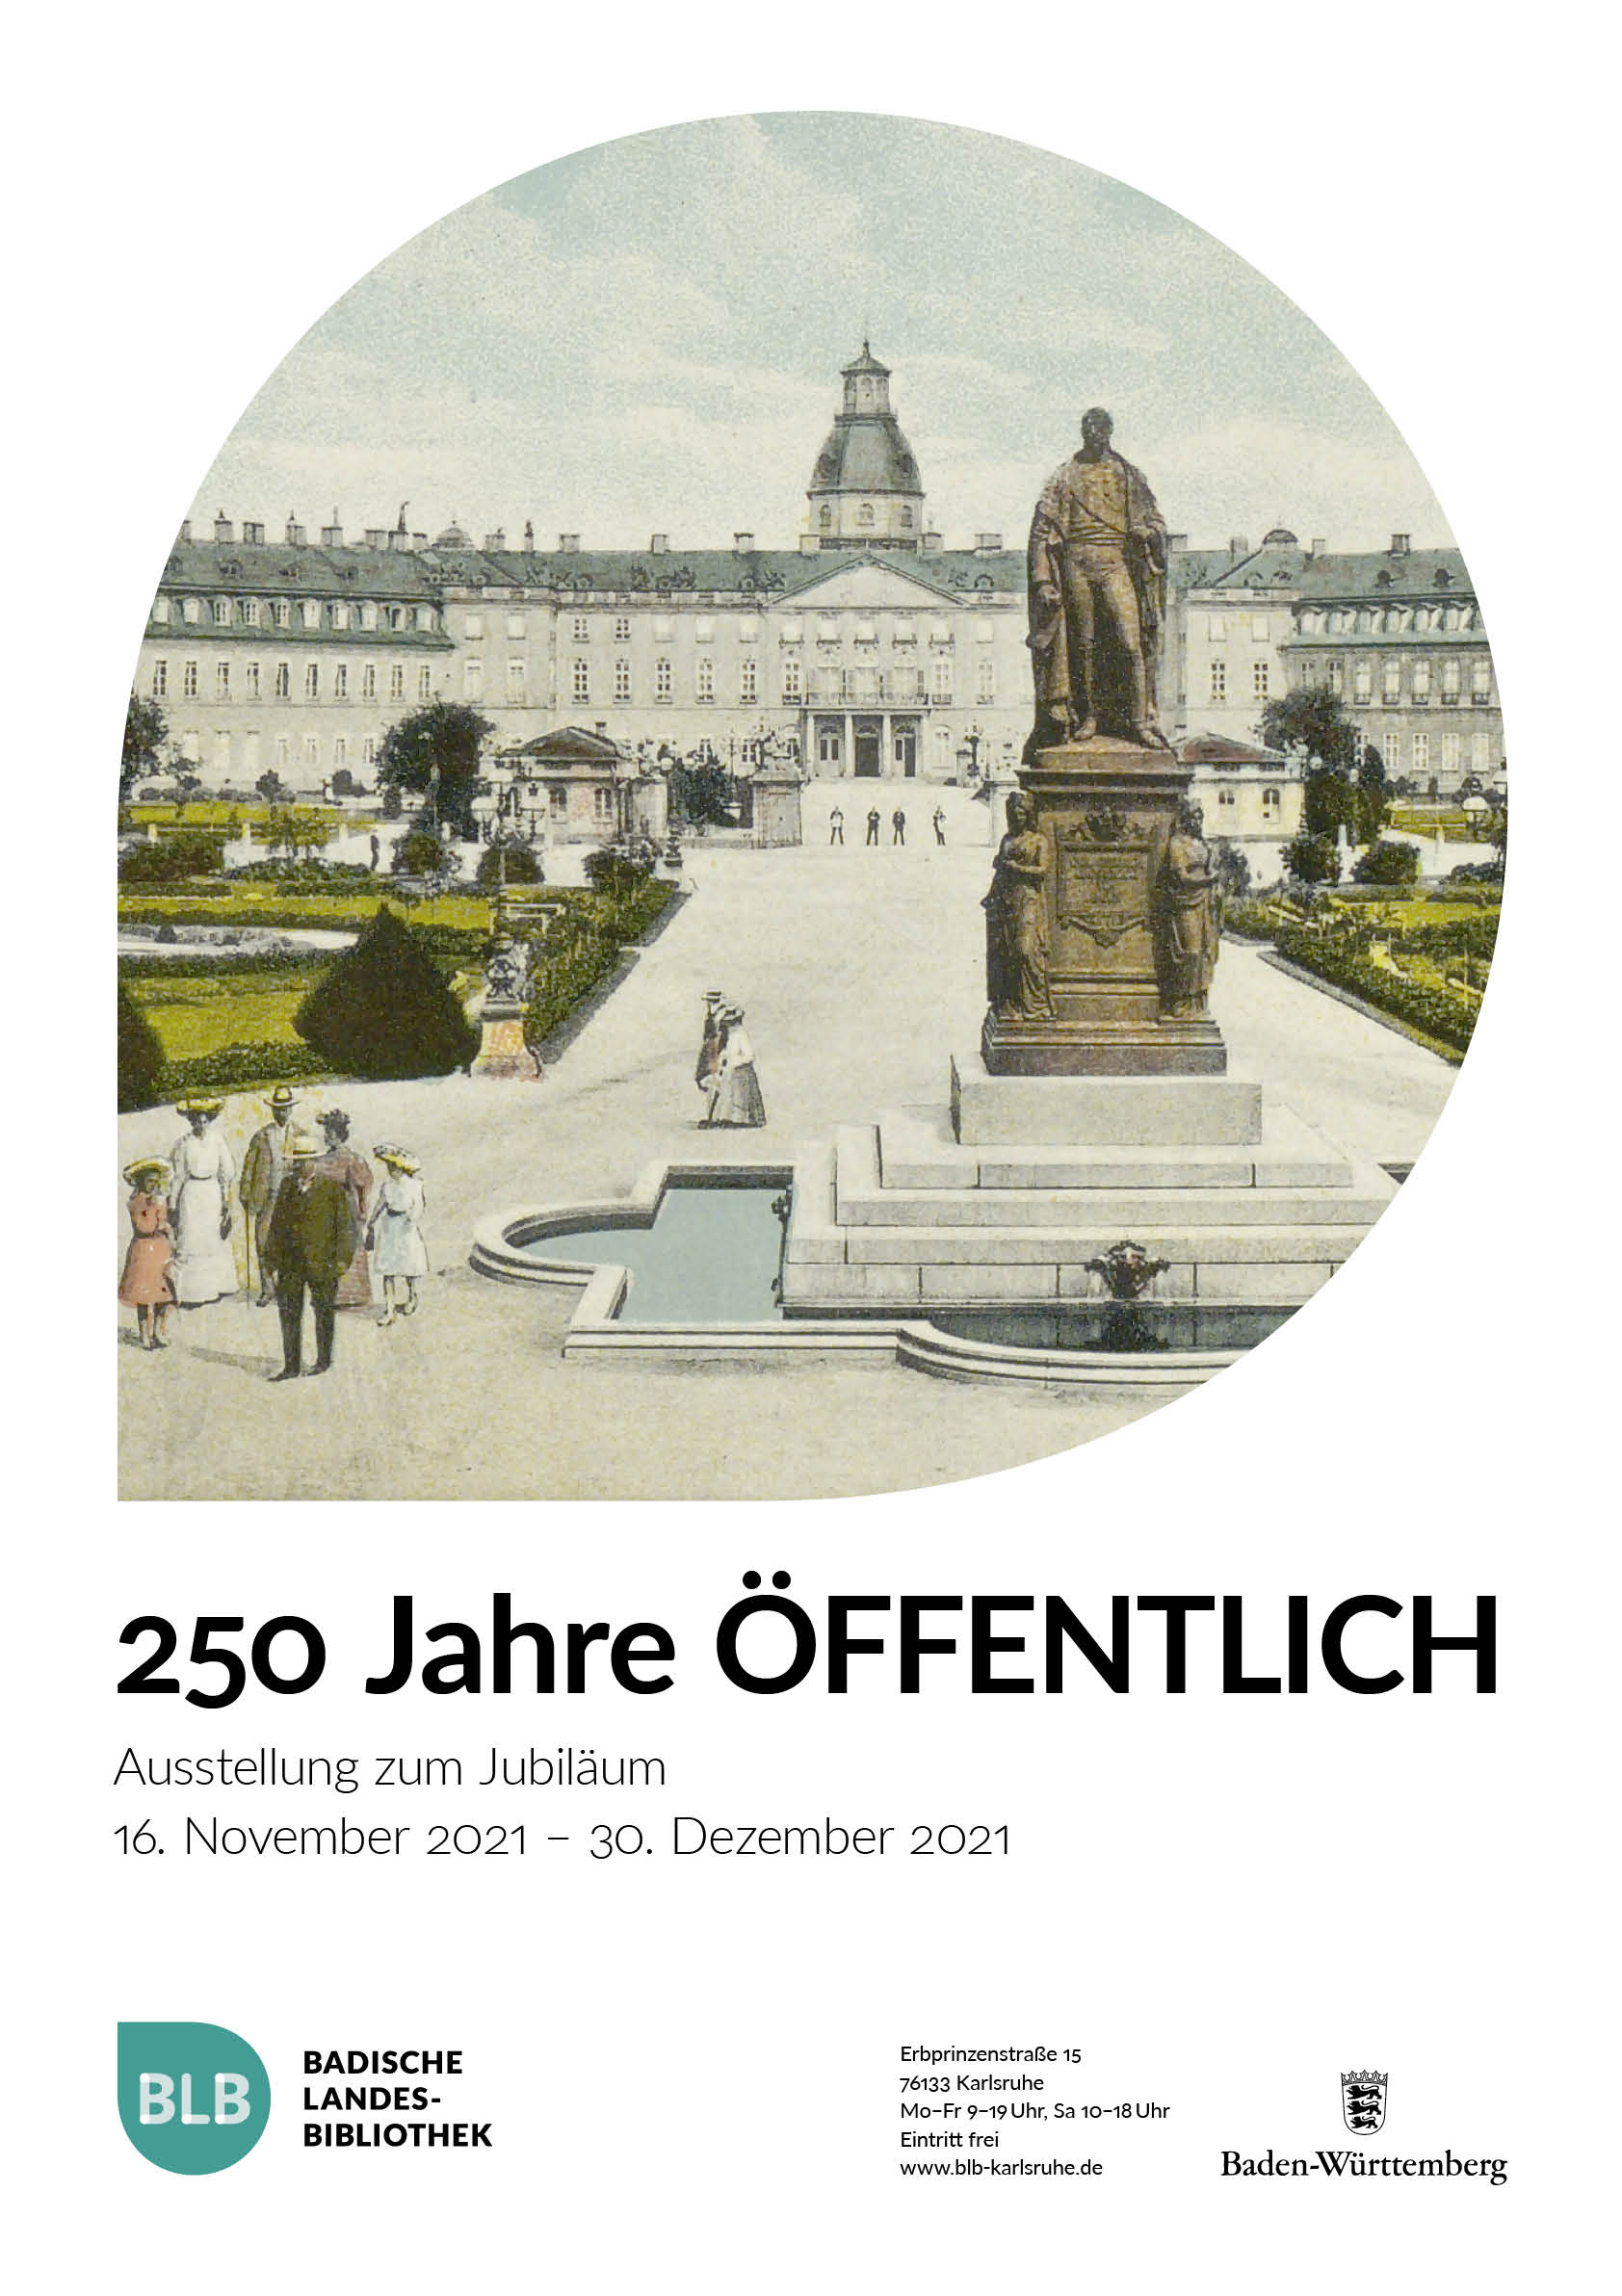 Buchcover der Publikation "250 JAHRE ÖFFENTLICH". Darauf zu sehen ist eine historische Ansicht des Schlosses Karlsruhe mit vorgelagertem Parkbereich. 